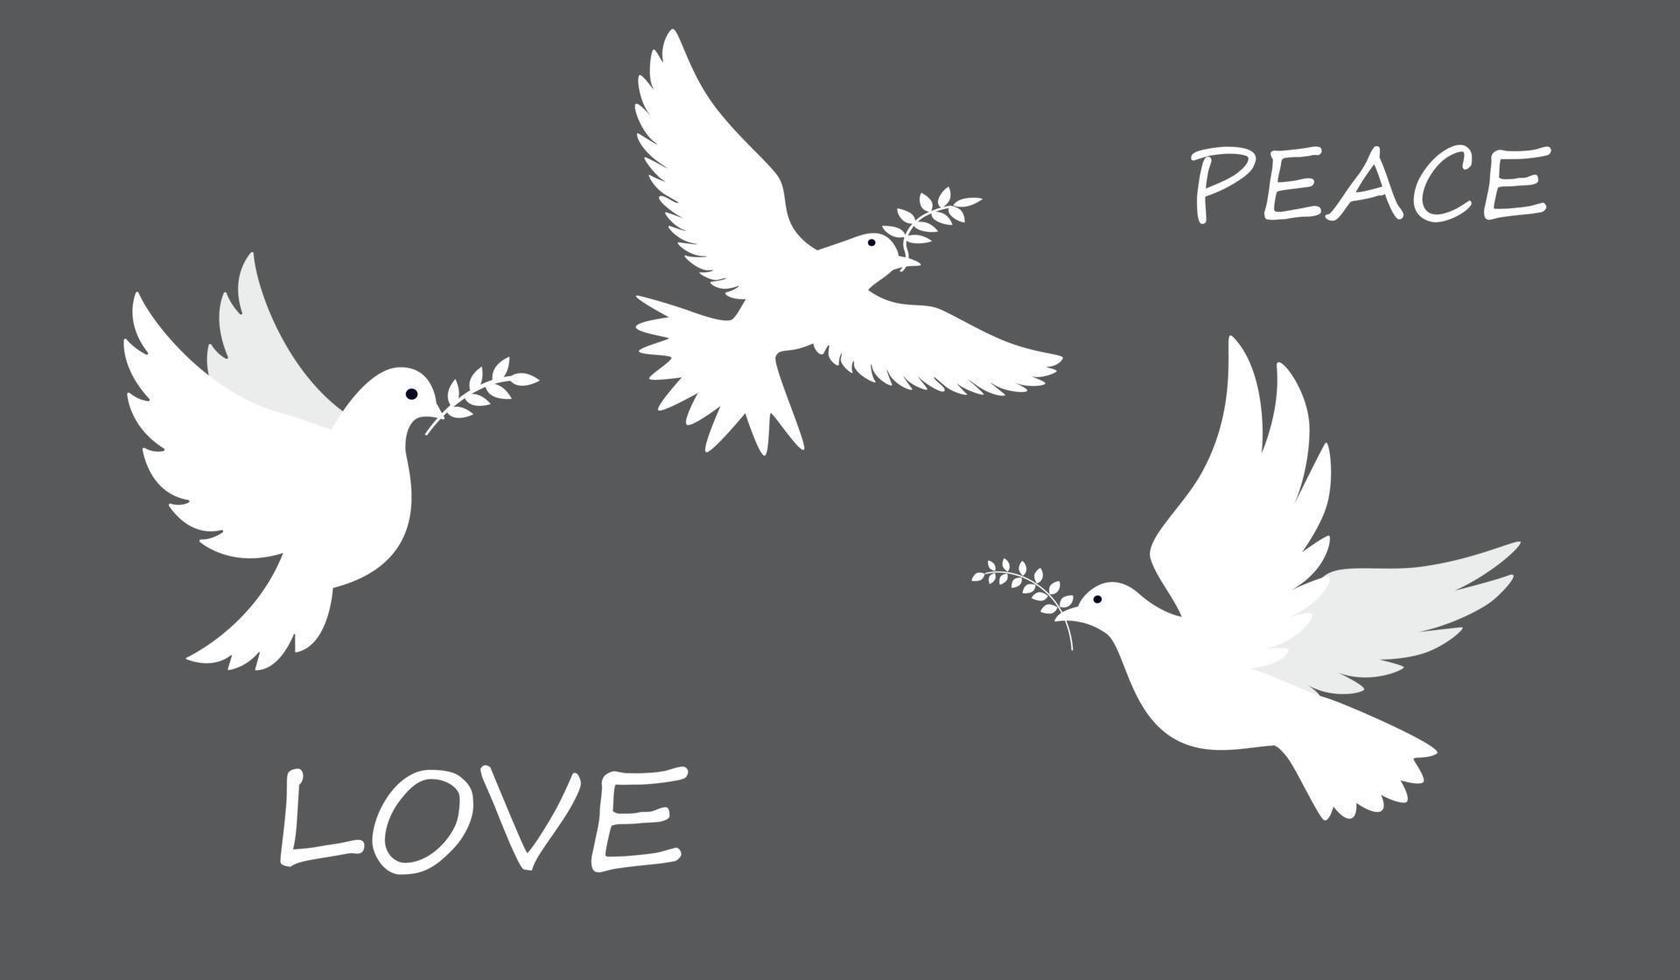 Colombe de paix. oiseaux volants et debout avec des branches d'olivier. paix et amour, liberté, pas de concept de guerre. illustration vectorielle moderne dessinée à la main. tous les éléments sont isolés vecteur